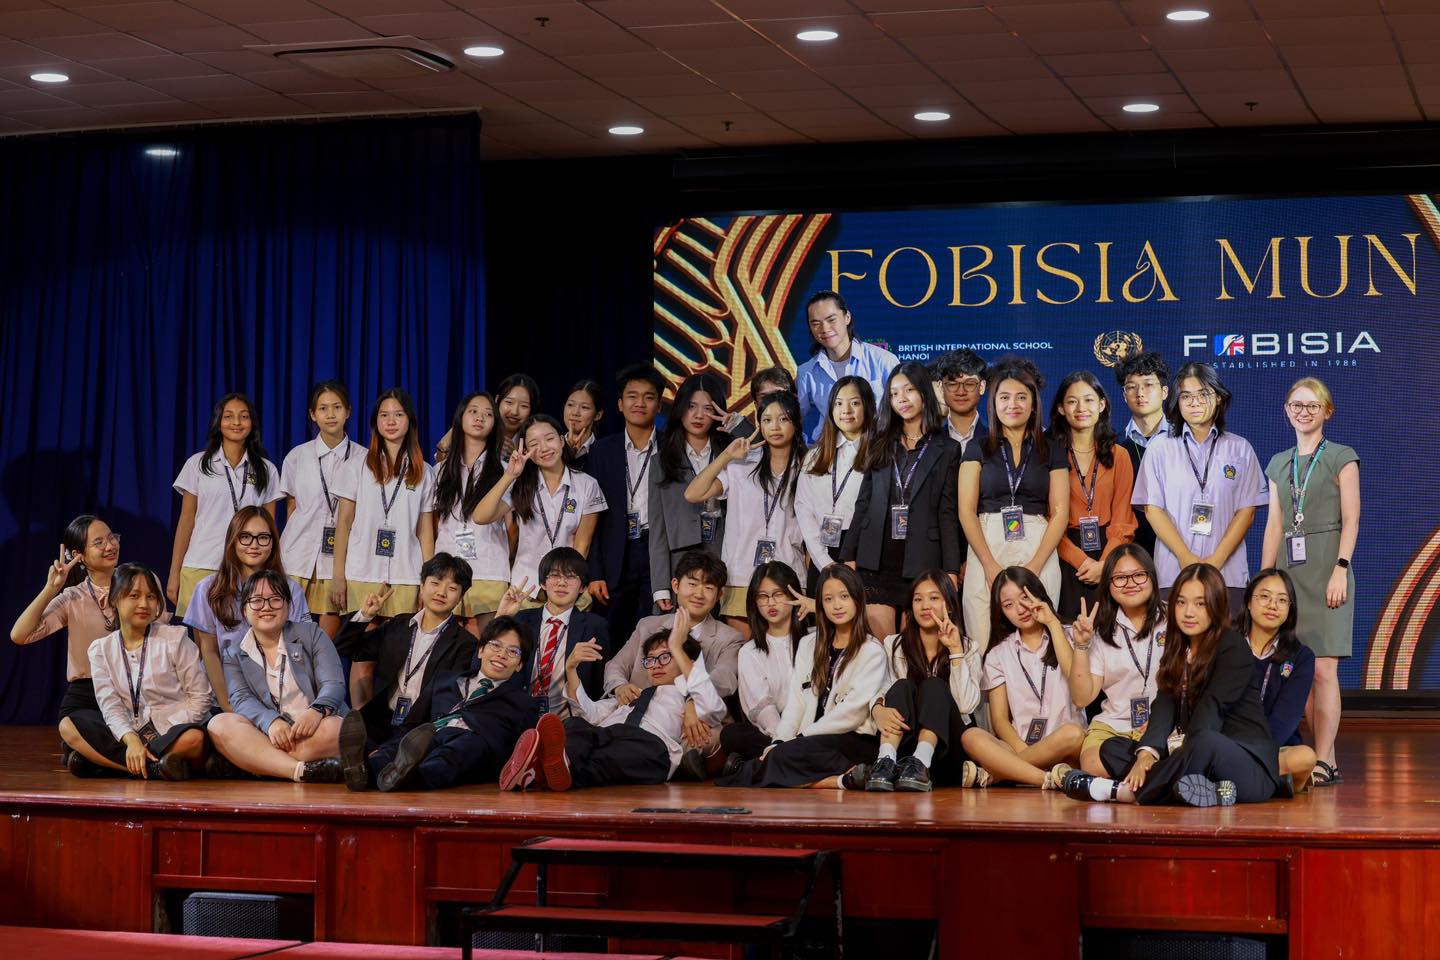 Hội nghị mô phỏng Liên Hợp Quốc do Hiệp hội các trường quốc tế Anh tại Châu Á lần đầu được tổ chức tại Hà Nội | Trường Quốc tế Anh BIS Hà Nội - The Leaders of Tomorrow BIS Hanoi Hosts the FOBISIA Model United Nations